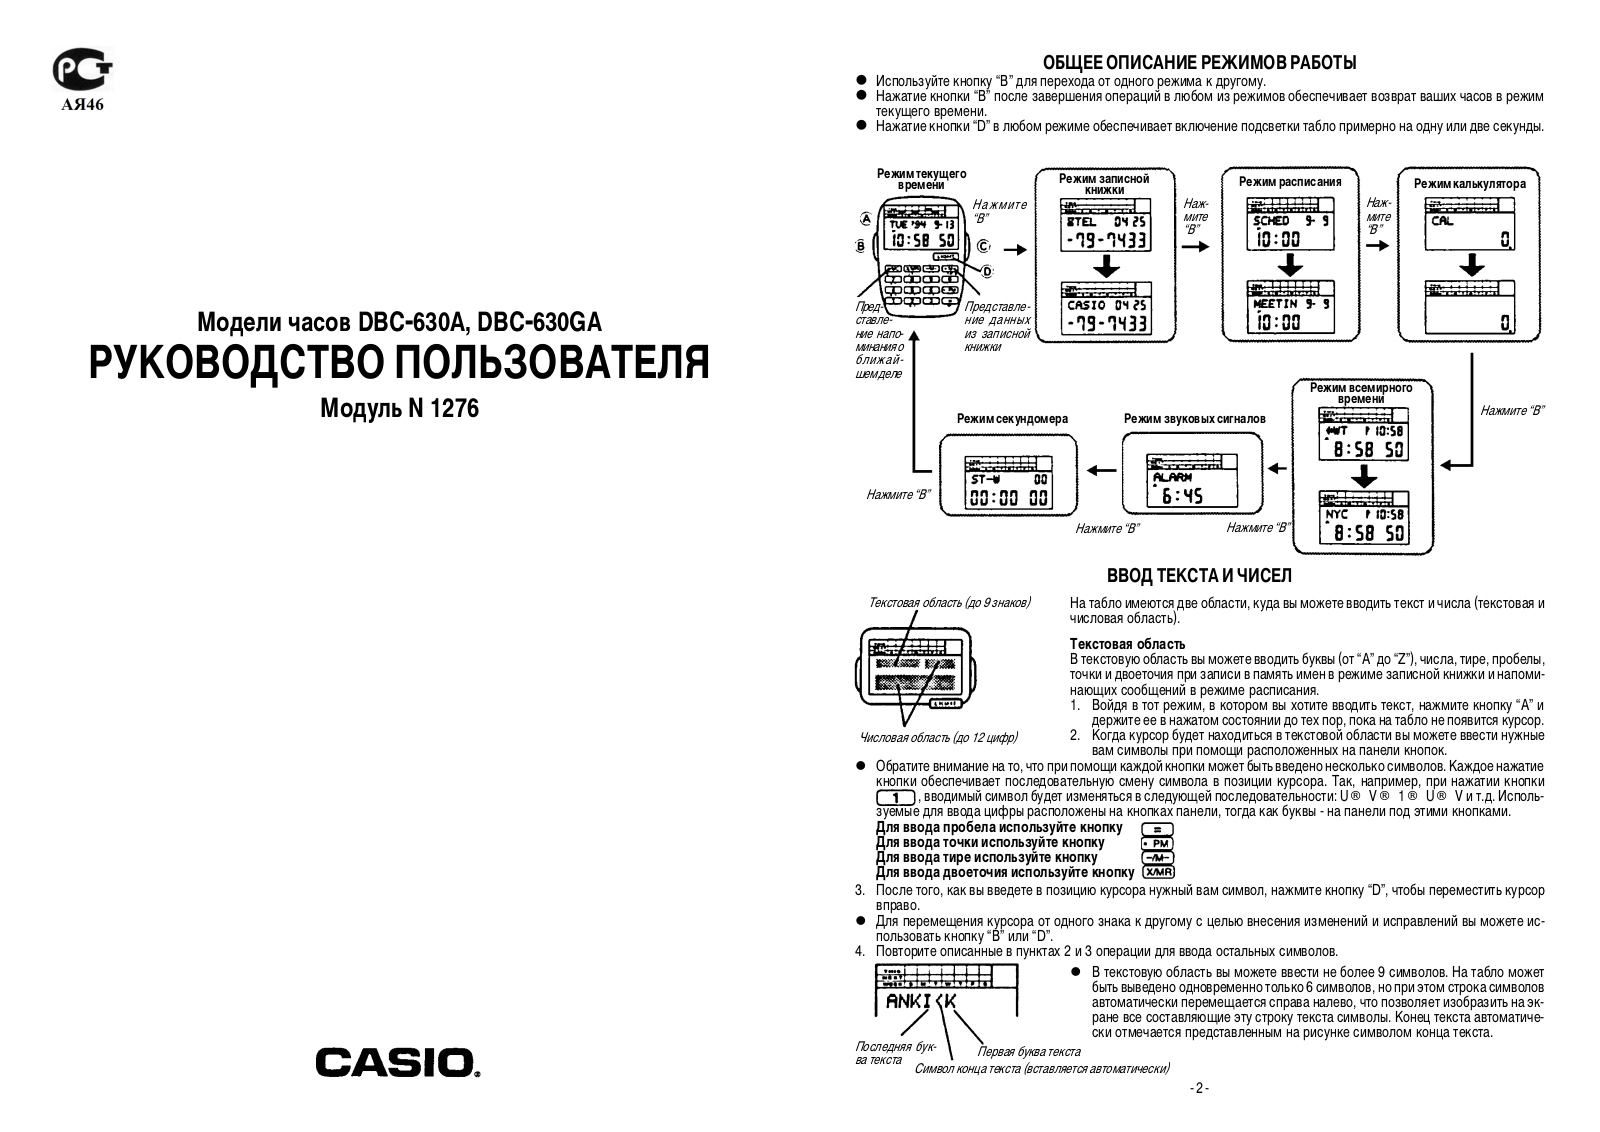 Casio 1276 User Manual